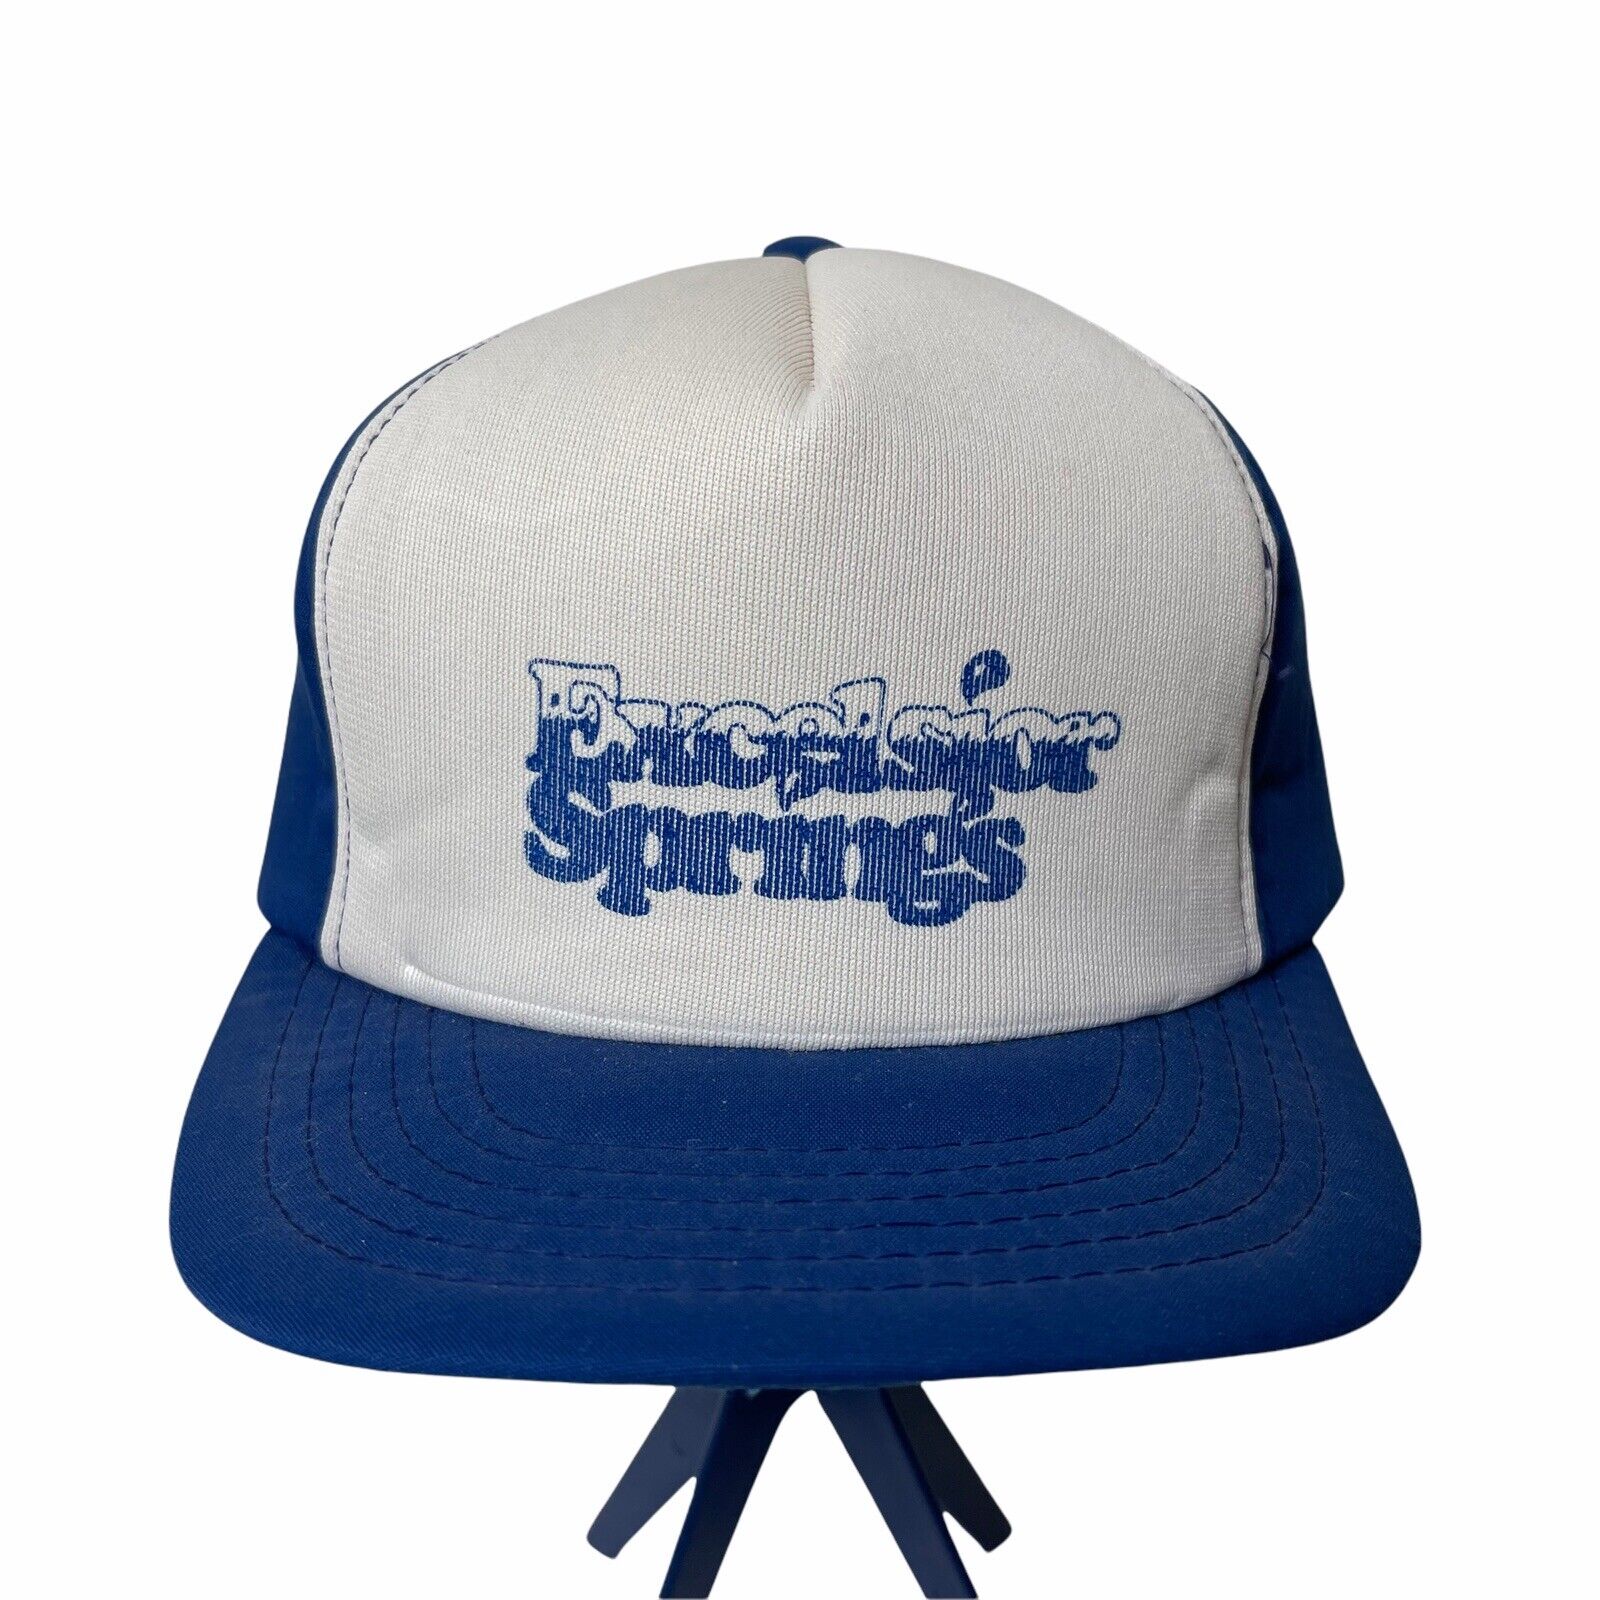 Vintage Snapback Excelsior Springs Missouri Hat Cap Blue White Foam Adjustable